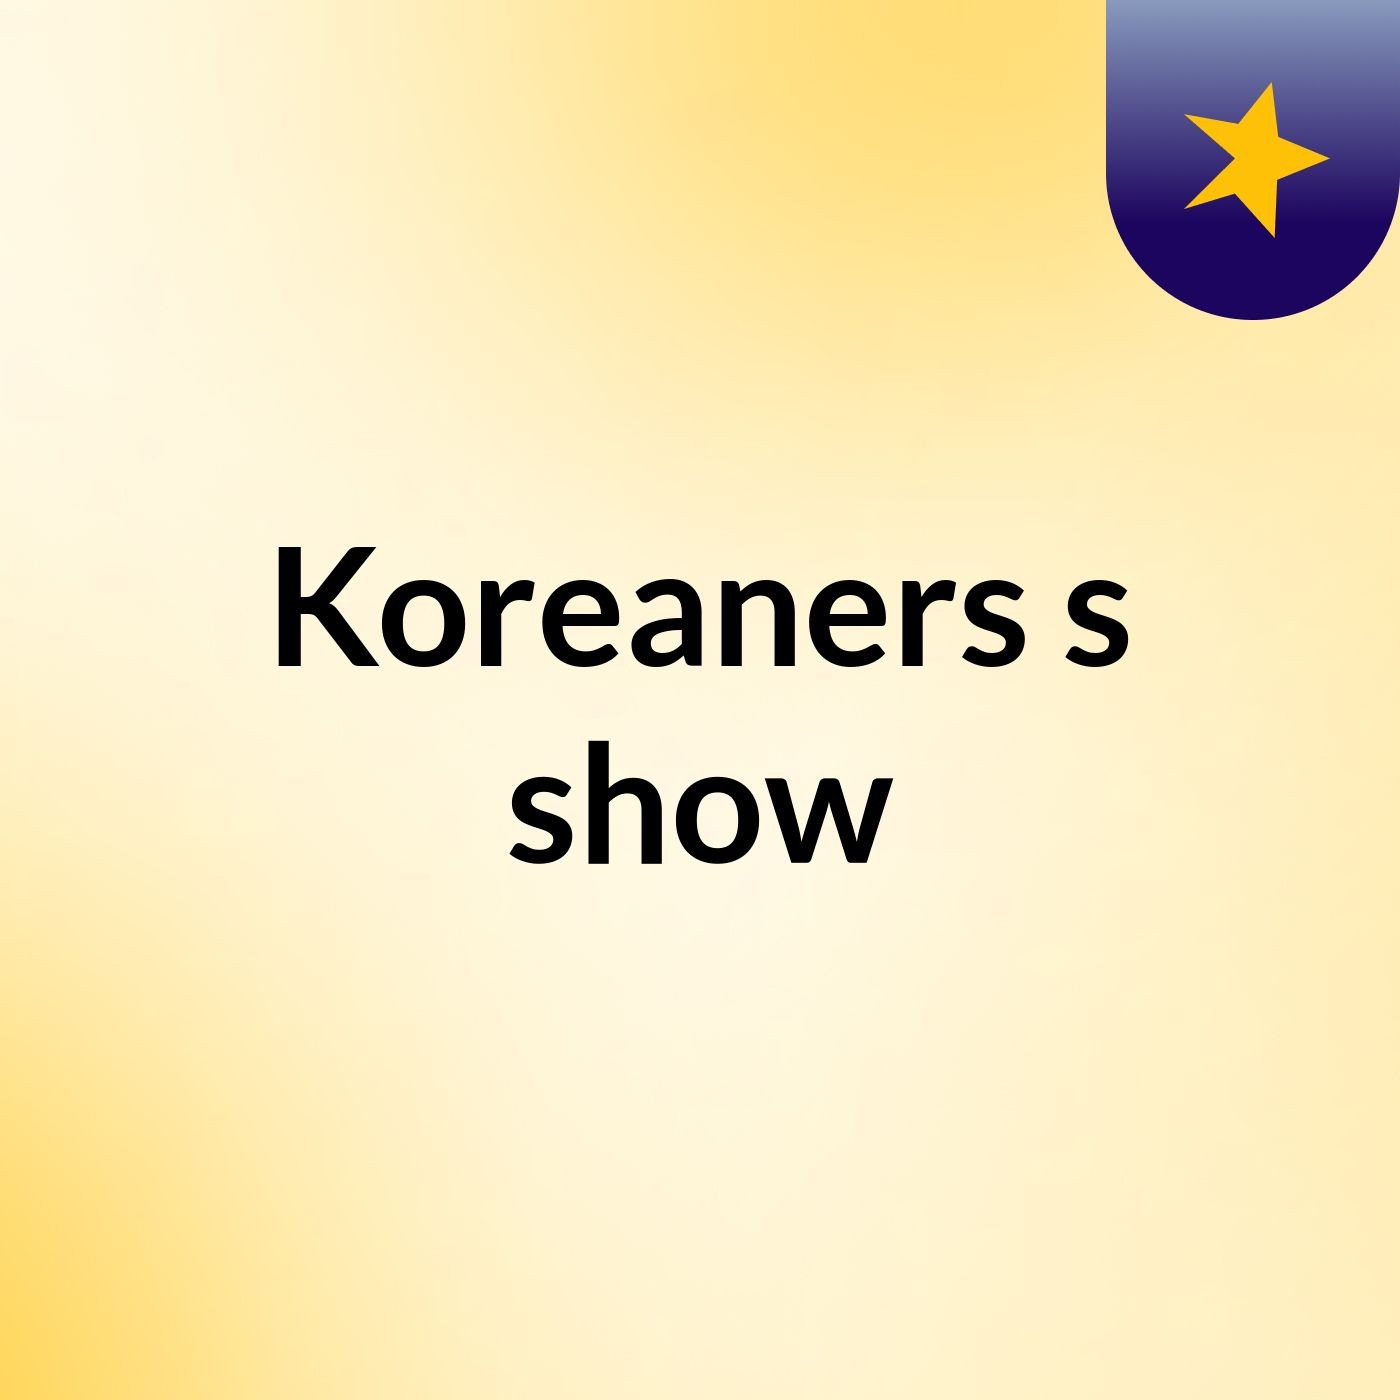 Koreaners's show